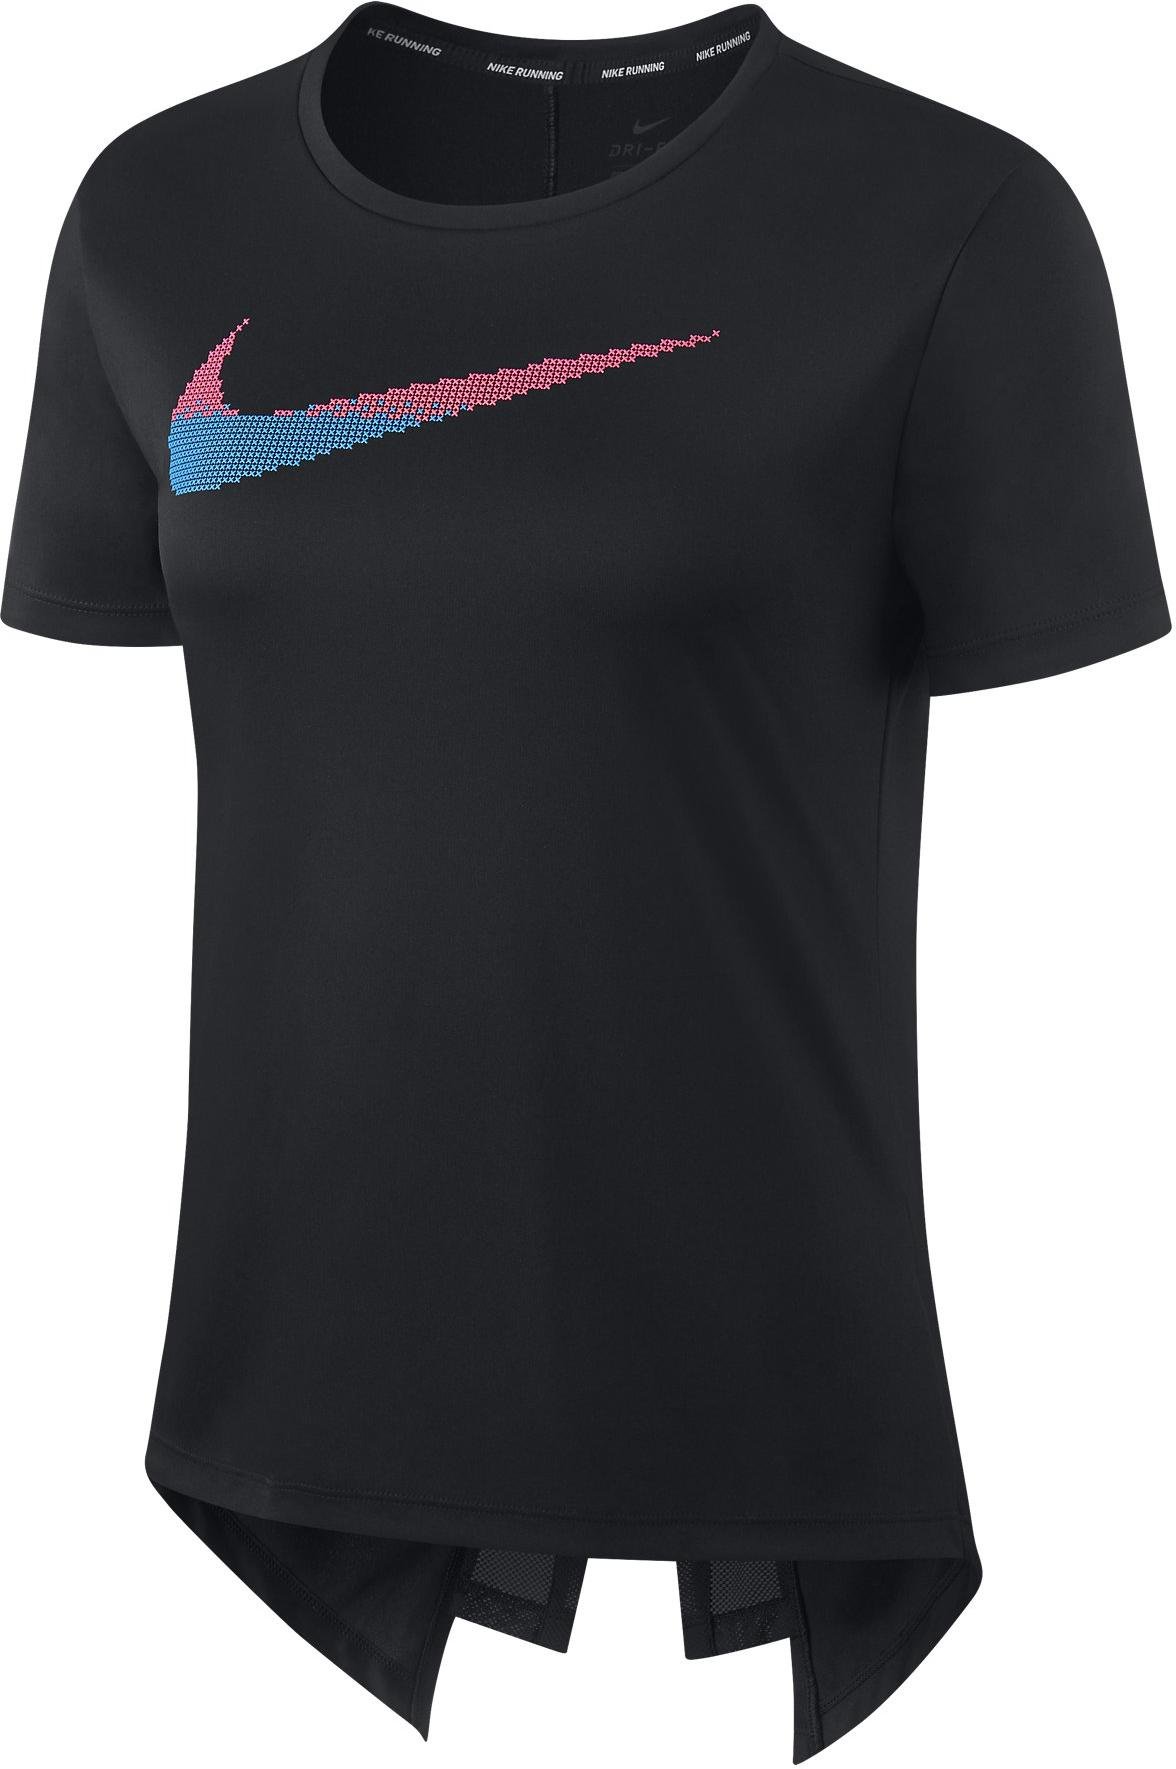 Dámské běžecké triko s krátkým rukávem Nike FTR Femme GX